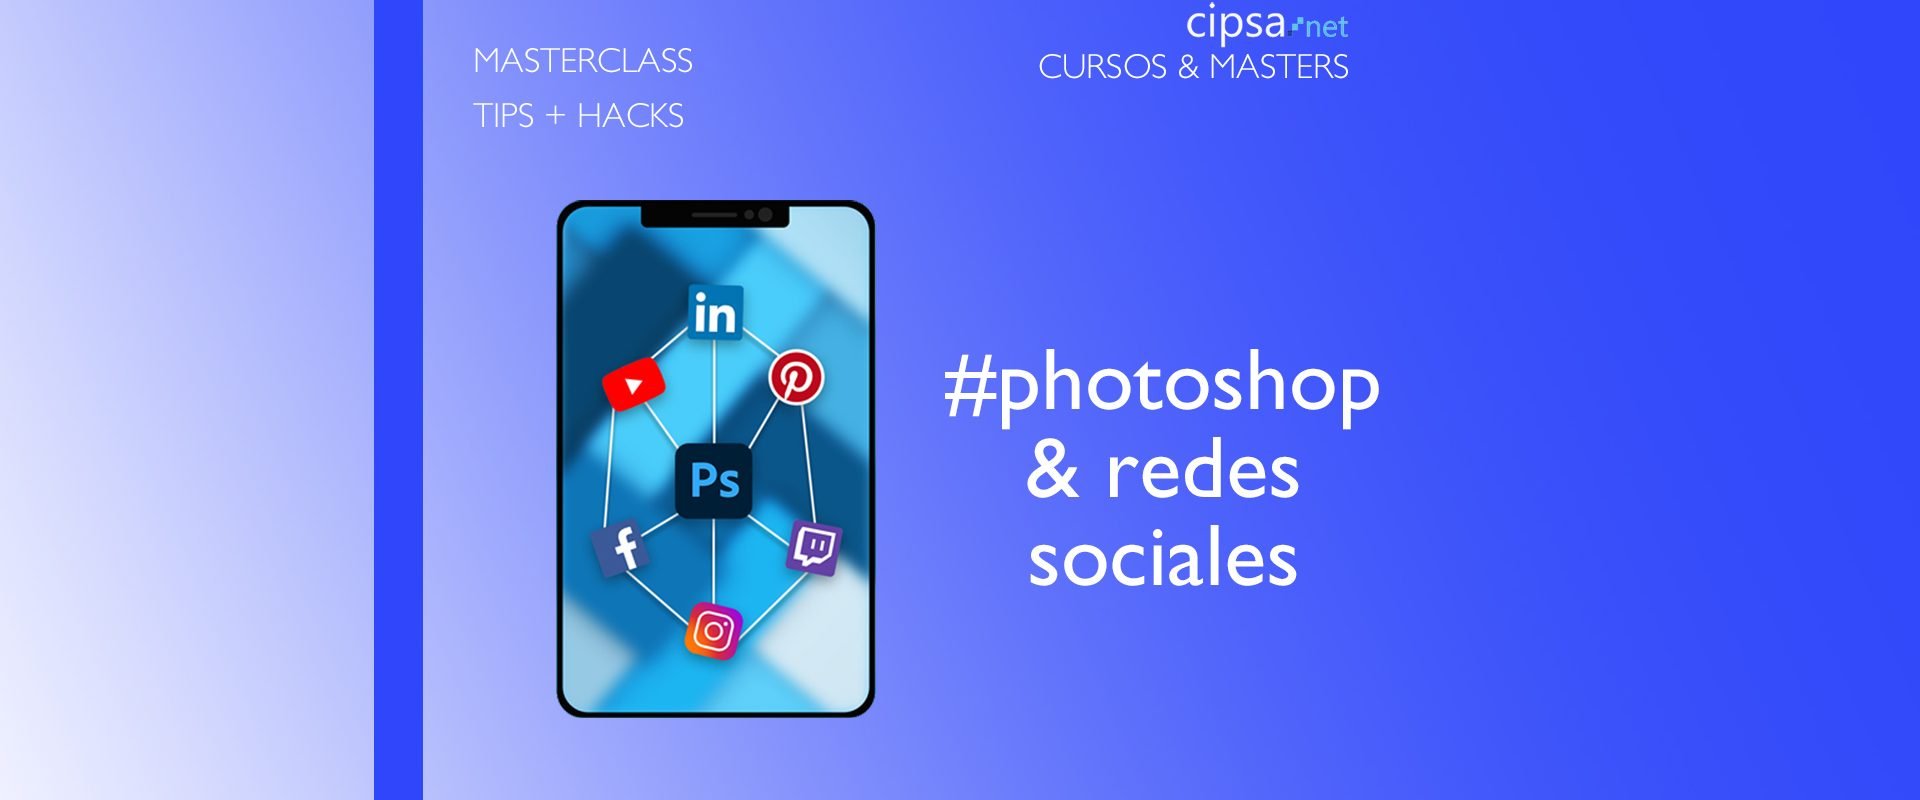 MASTERCLASS * Tips Photoshop para Redes Sociales. Profesor Marc Bañoles CIPSA BARCELONA JUEVES 26 NOVIEMBRE 12H MASTERCLASS